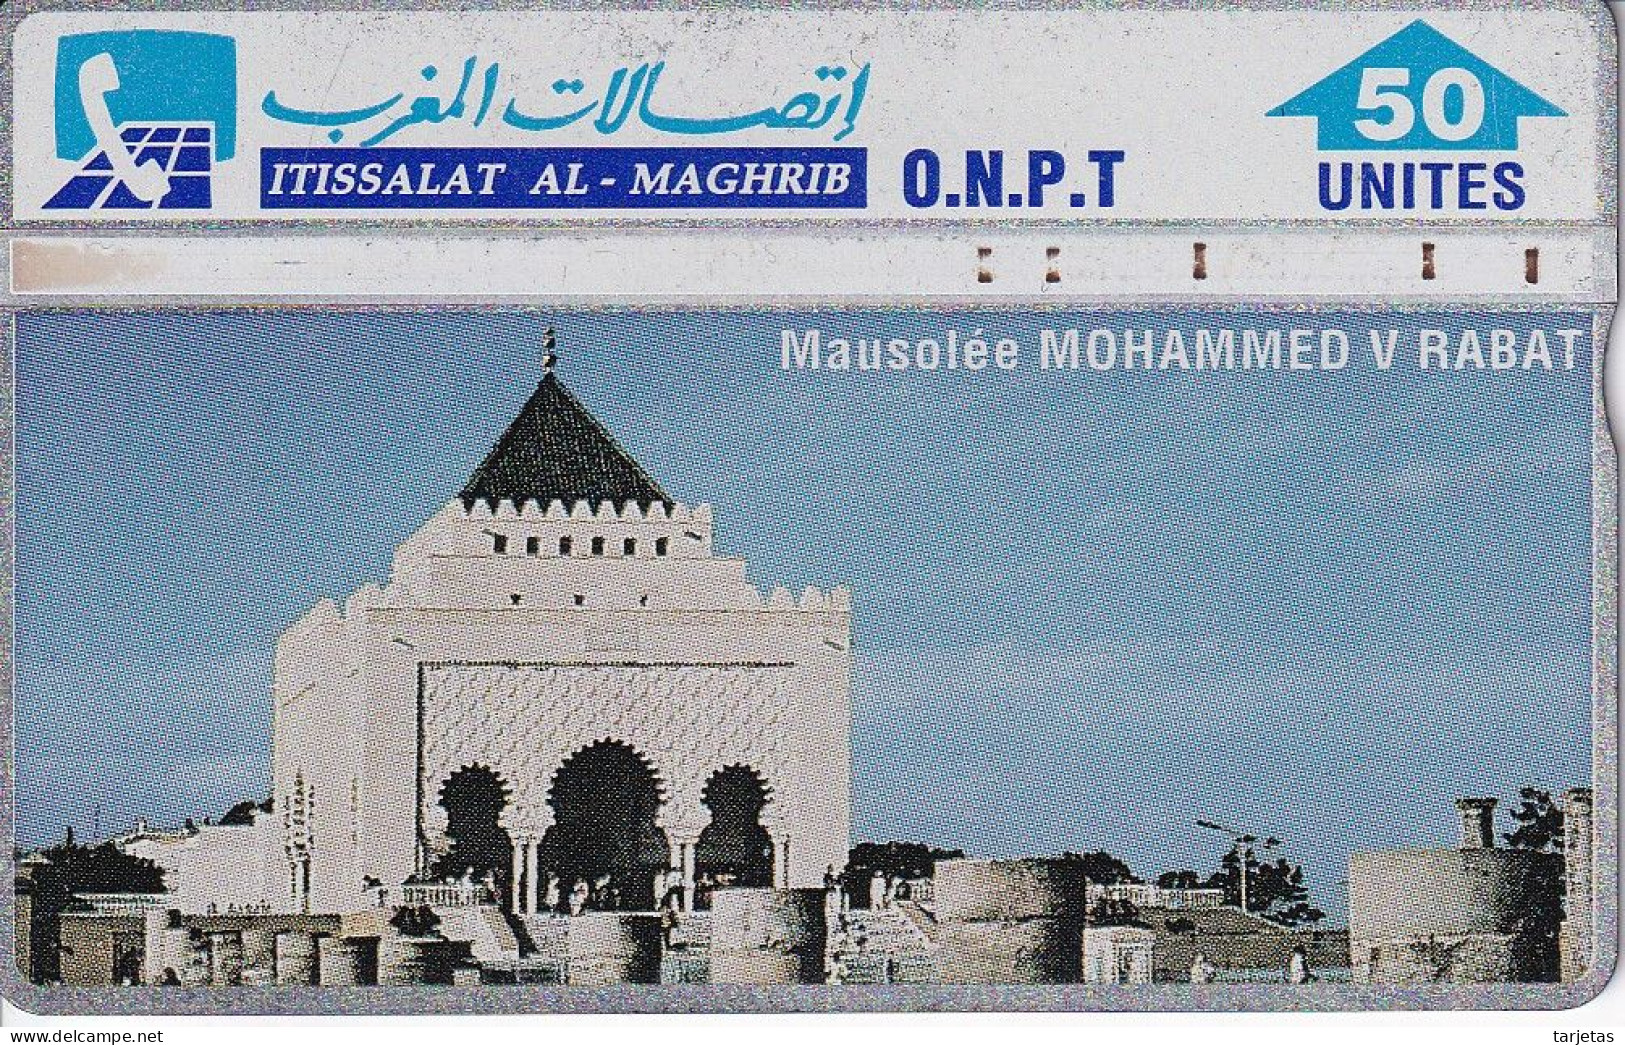 TARJETA DE MARRUECOS DE 50 UNITES MAUSOLEE MOHAMMED V RABAT (310C) - Morocco